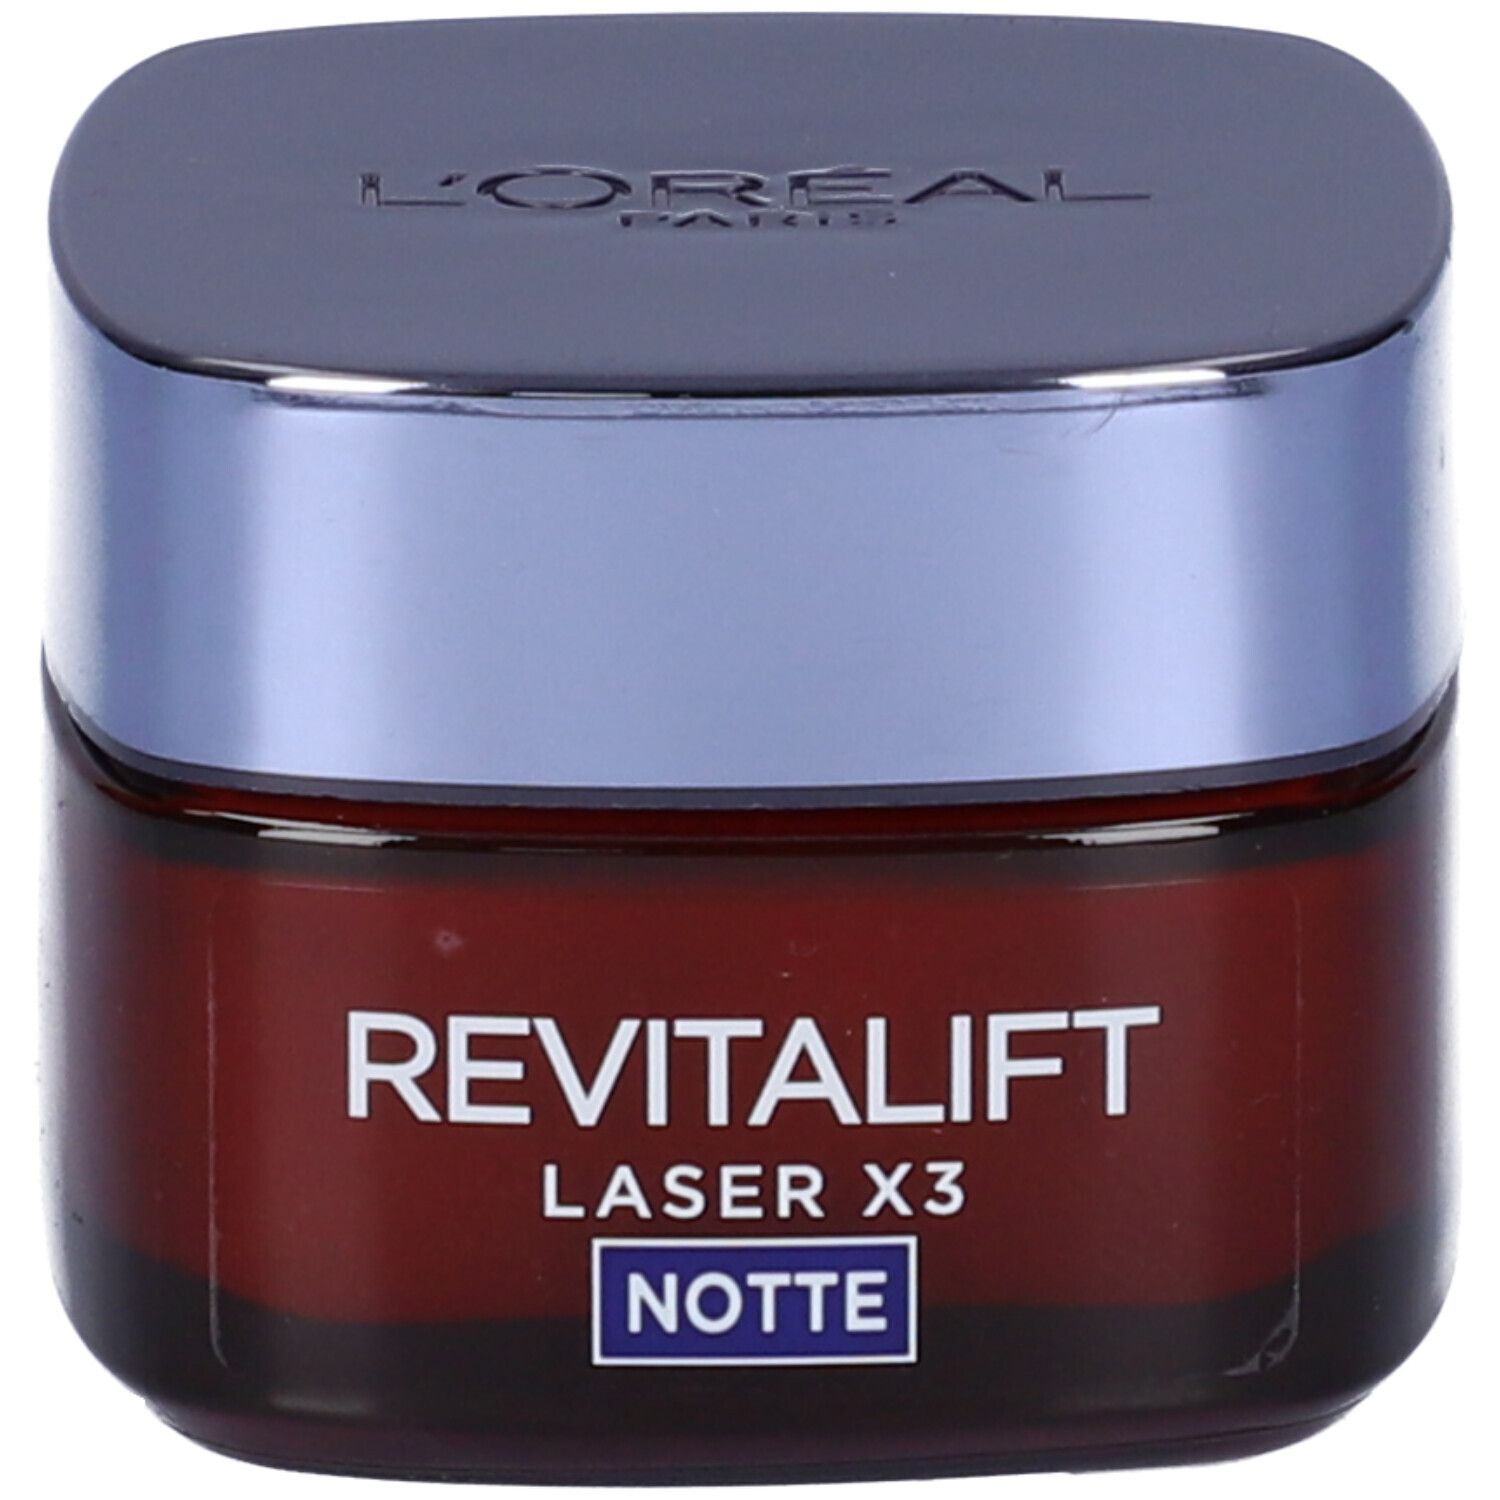 Image of L'Oréal Paris Crema Viso Notte Revitalift Laser X3, Azione Antirughe Anti-Età con Acido Ialuronico e Pro-Xylane, 50 ml